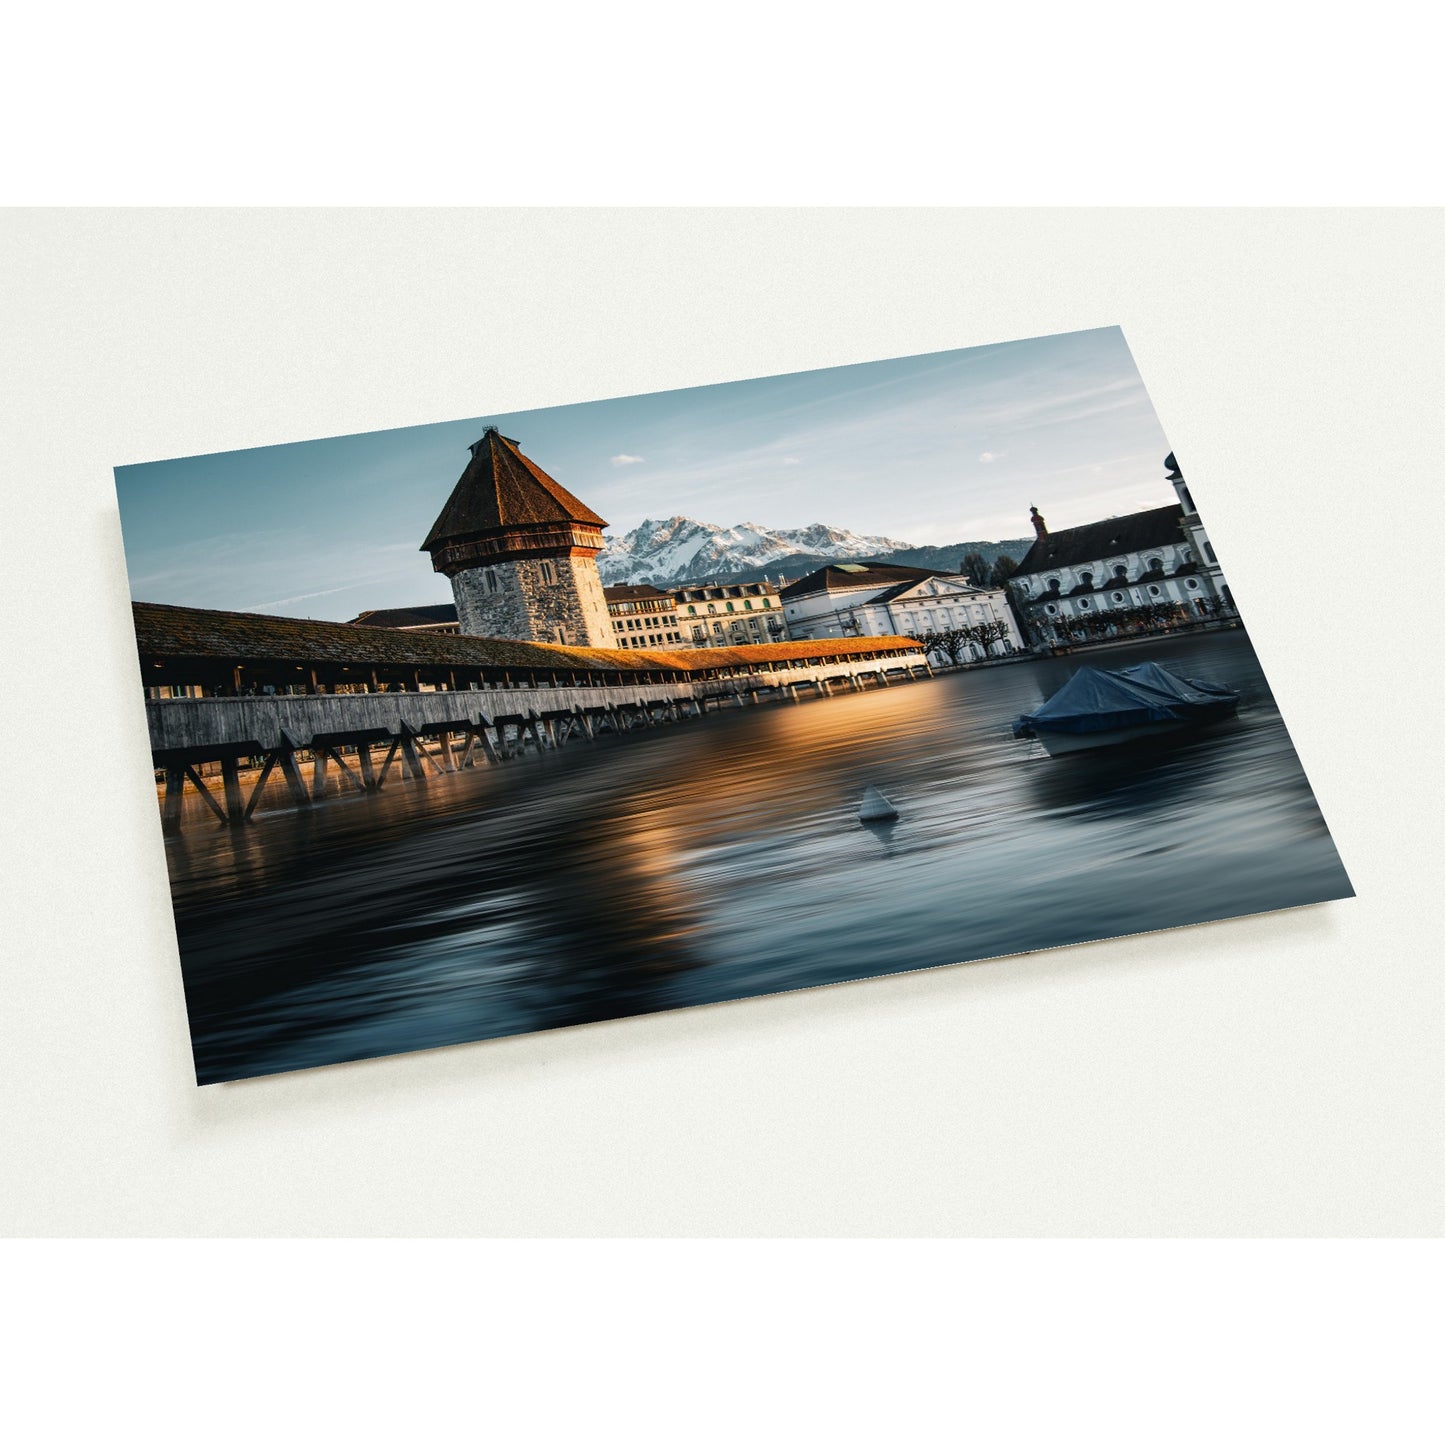 Kapellbrücke Luzern und Pilatus – Abenddämmerung - Grusskarten-Set mit 10 Karten (2-seitig, mit Umschläge)